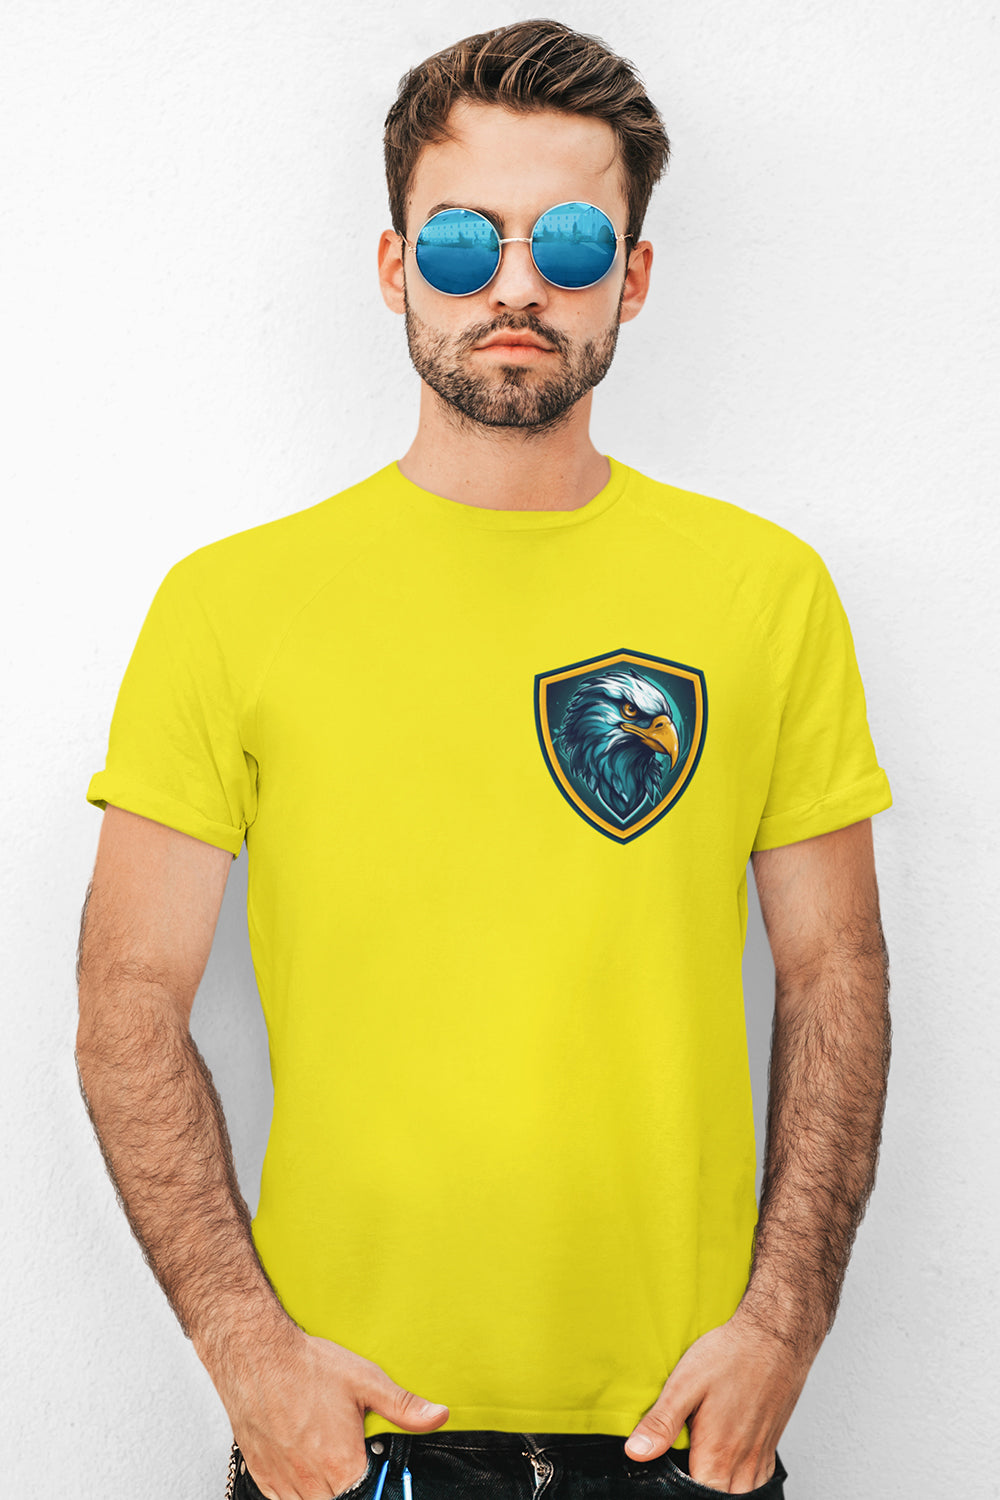 Eagle Graphic Printed Yellow Tshirt